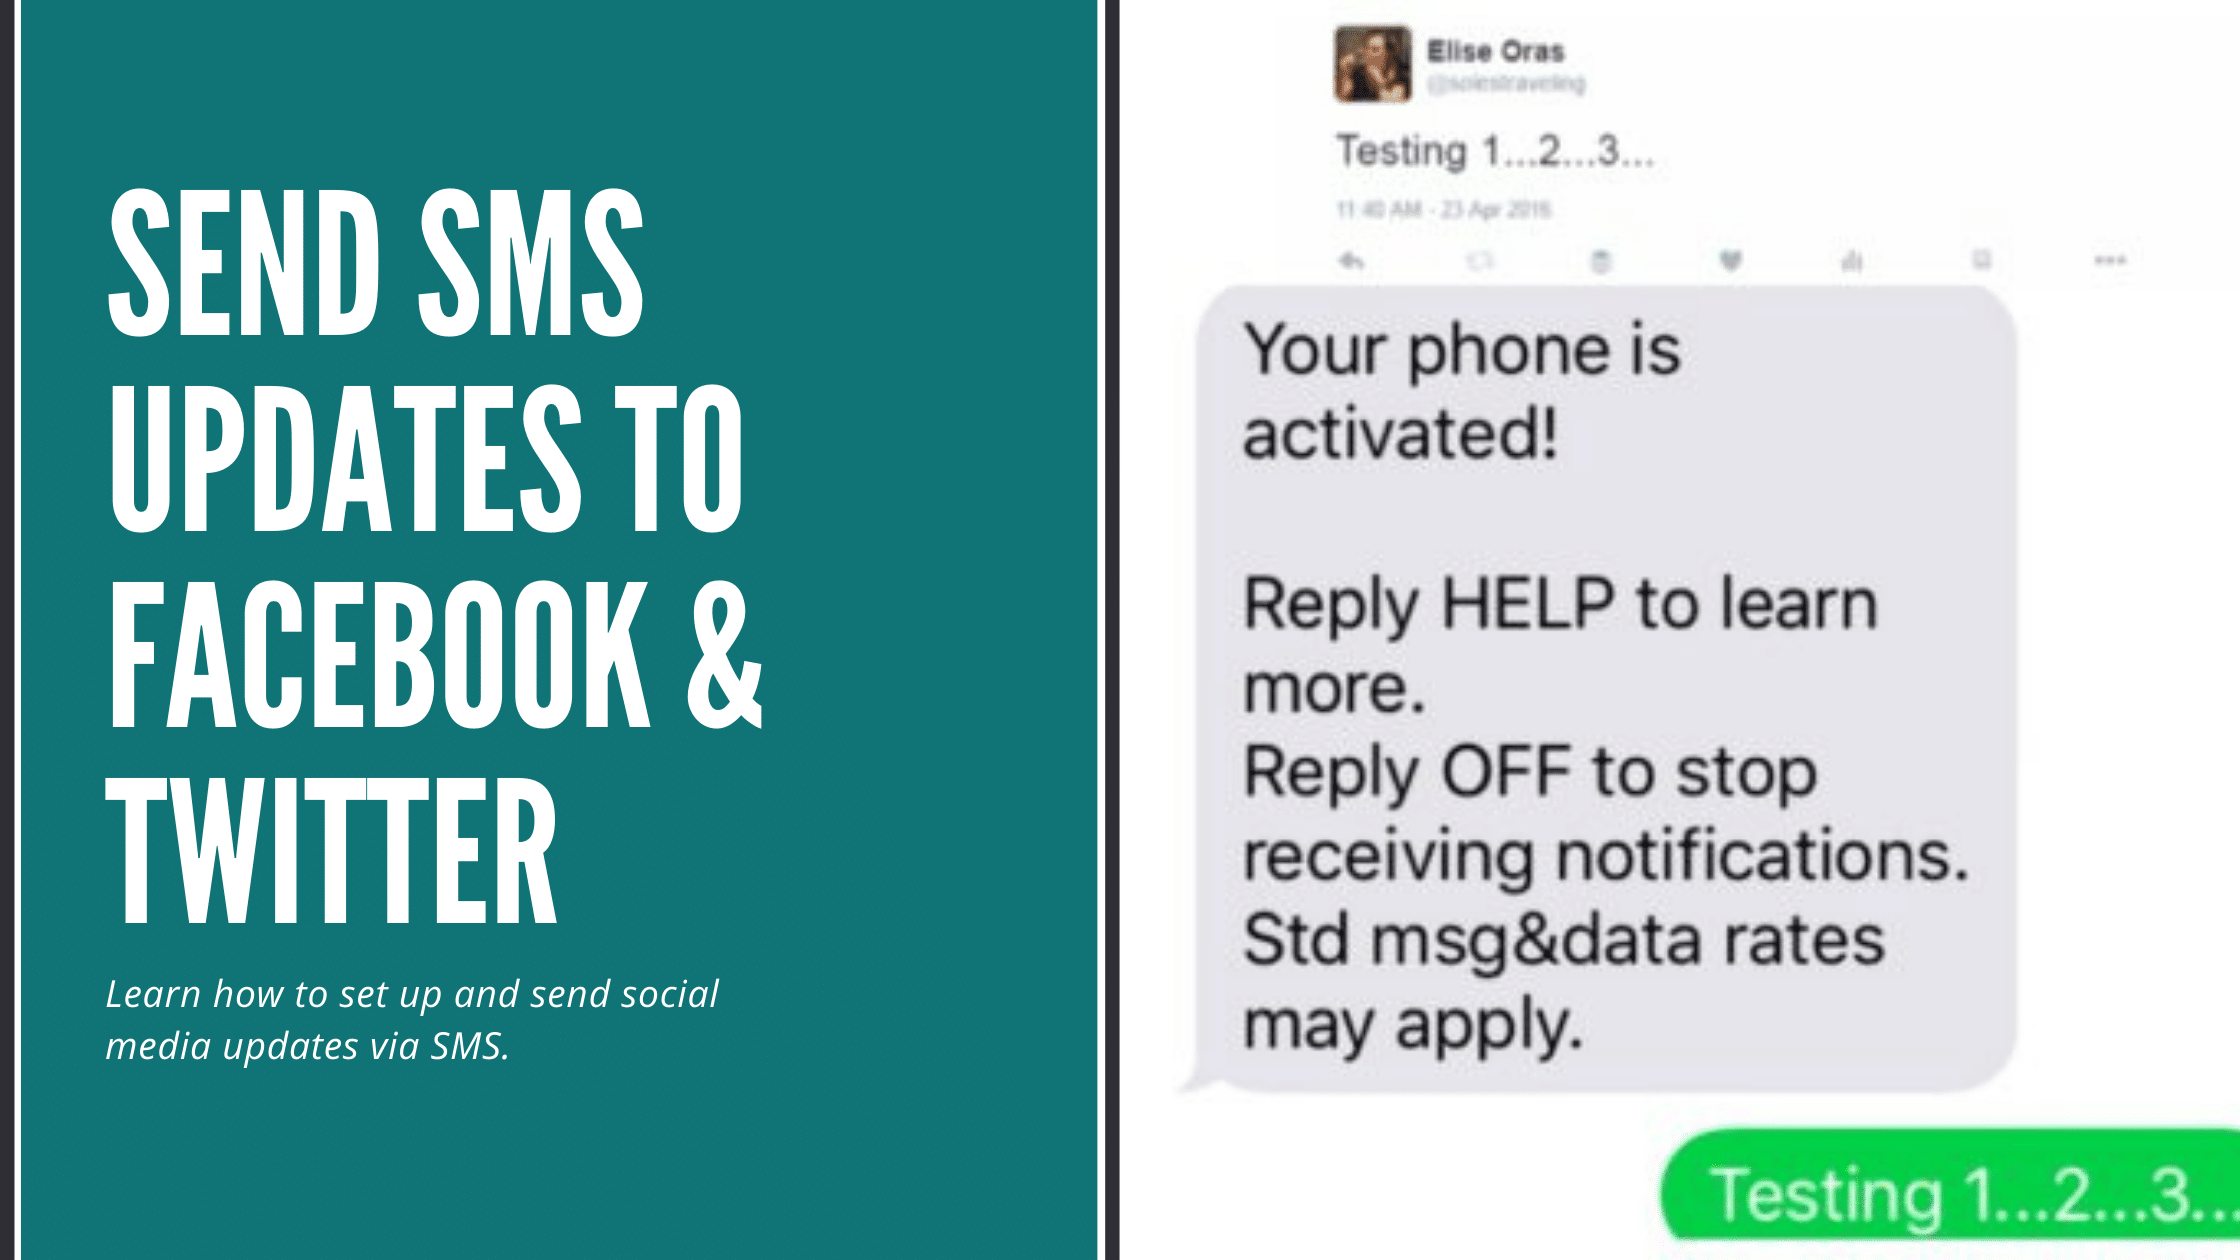 send sms updates via social media